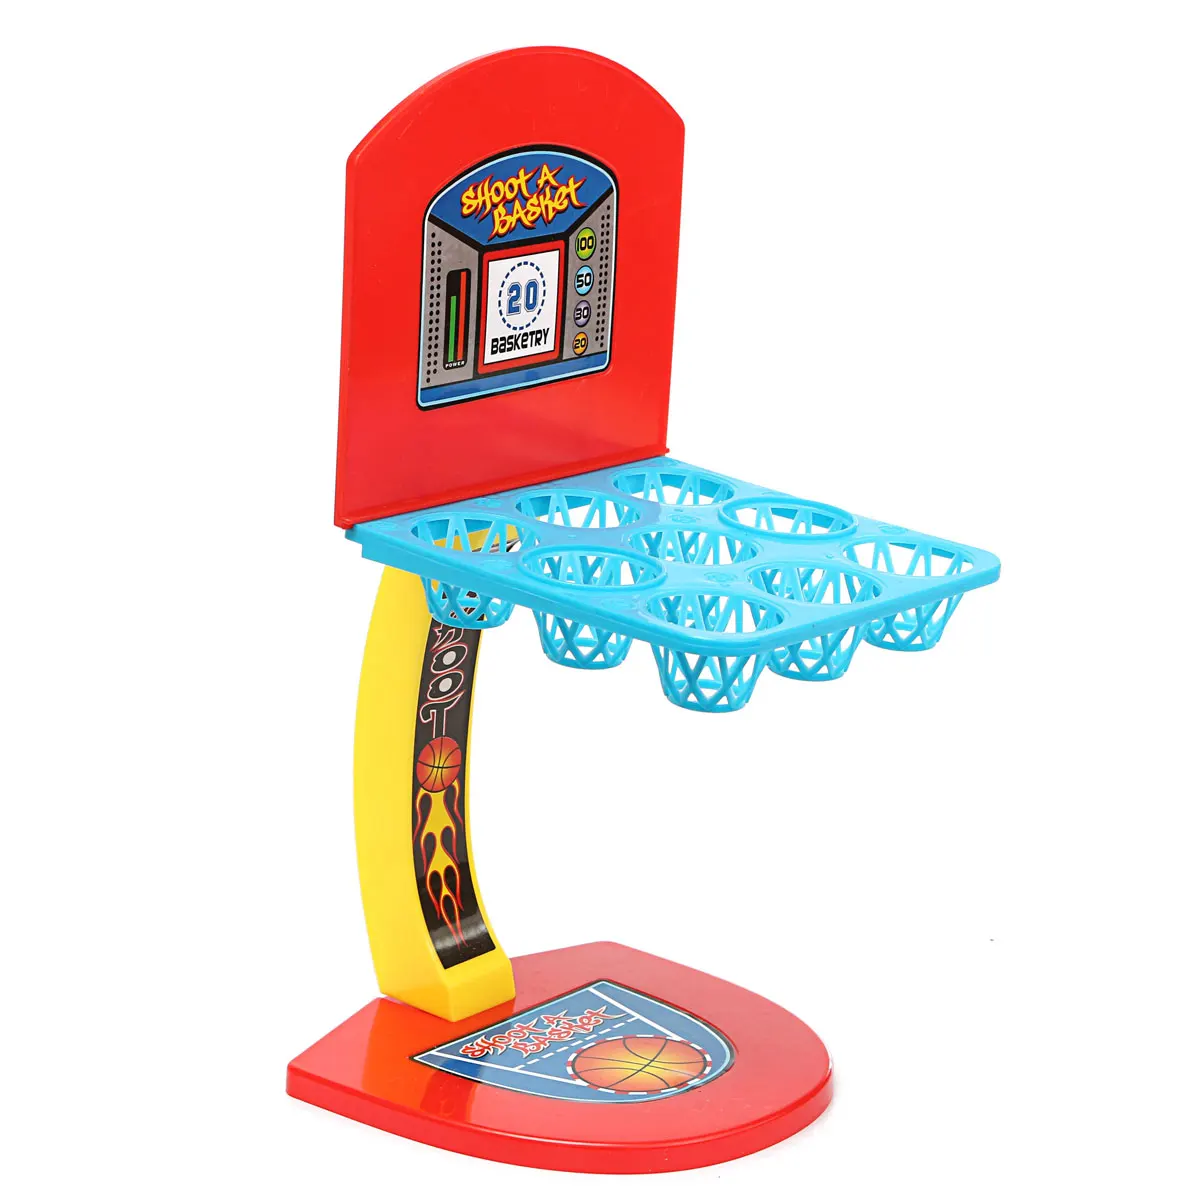 JIMITU мини игрушки на тему баскетбола стрельба настольная игра развивающие настольные игрушки для детей мраморная игра Обучение Образование